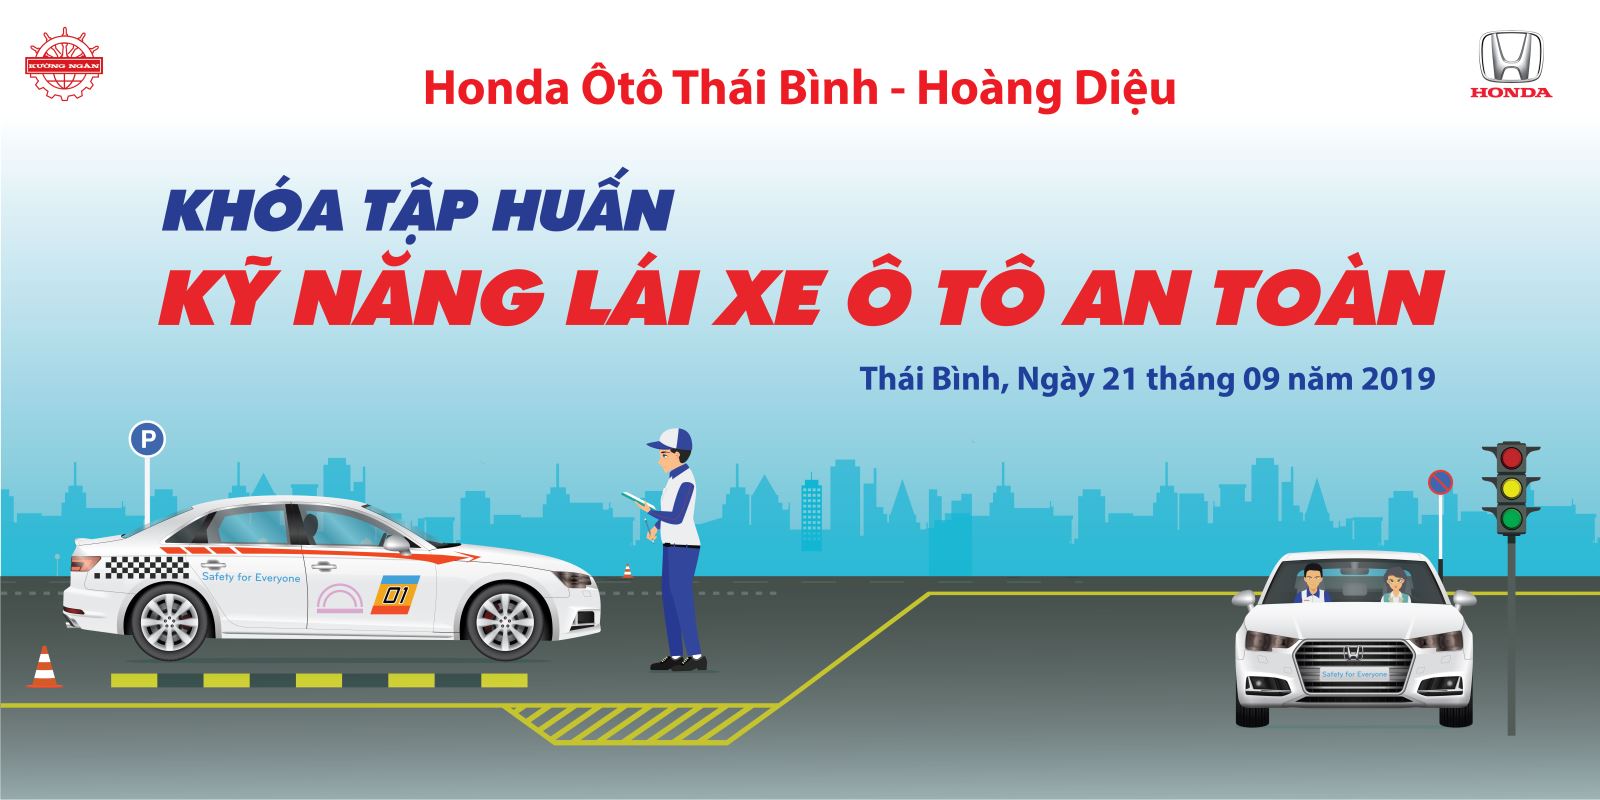 Honda Ô tô Thái Bình - Hoàng Diệu tổ chức tập huấn kỹ năng lái xe ô tô an toàn 09/2019